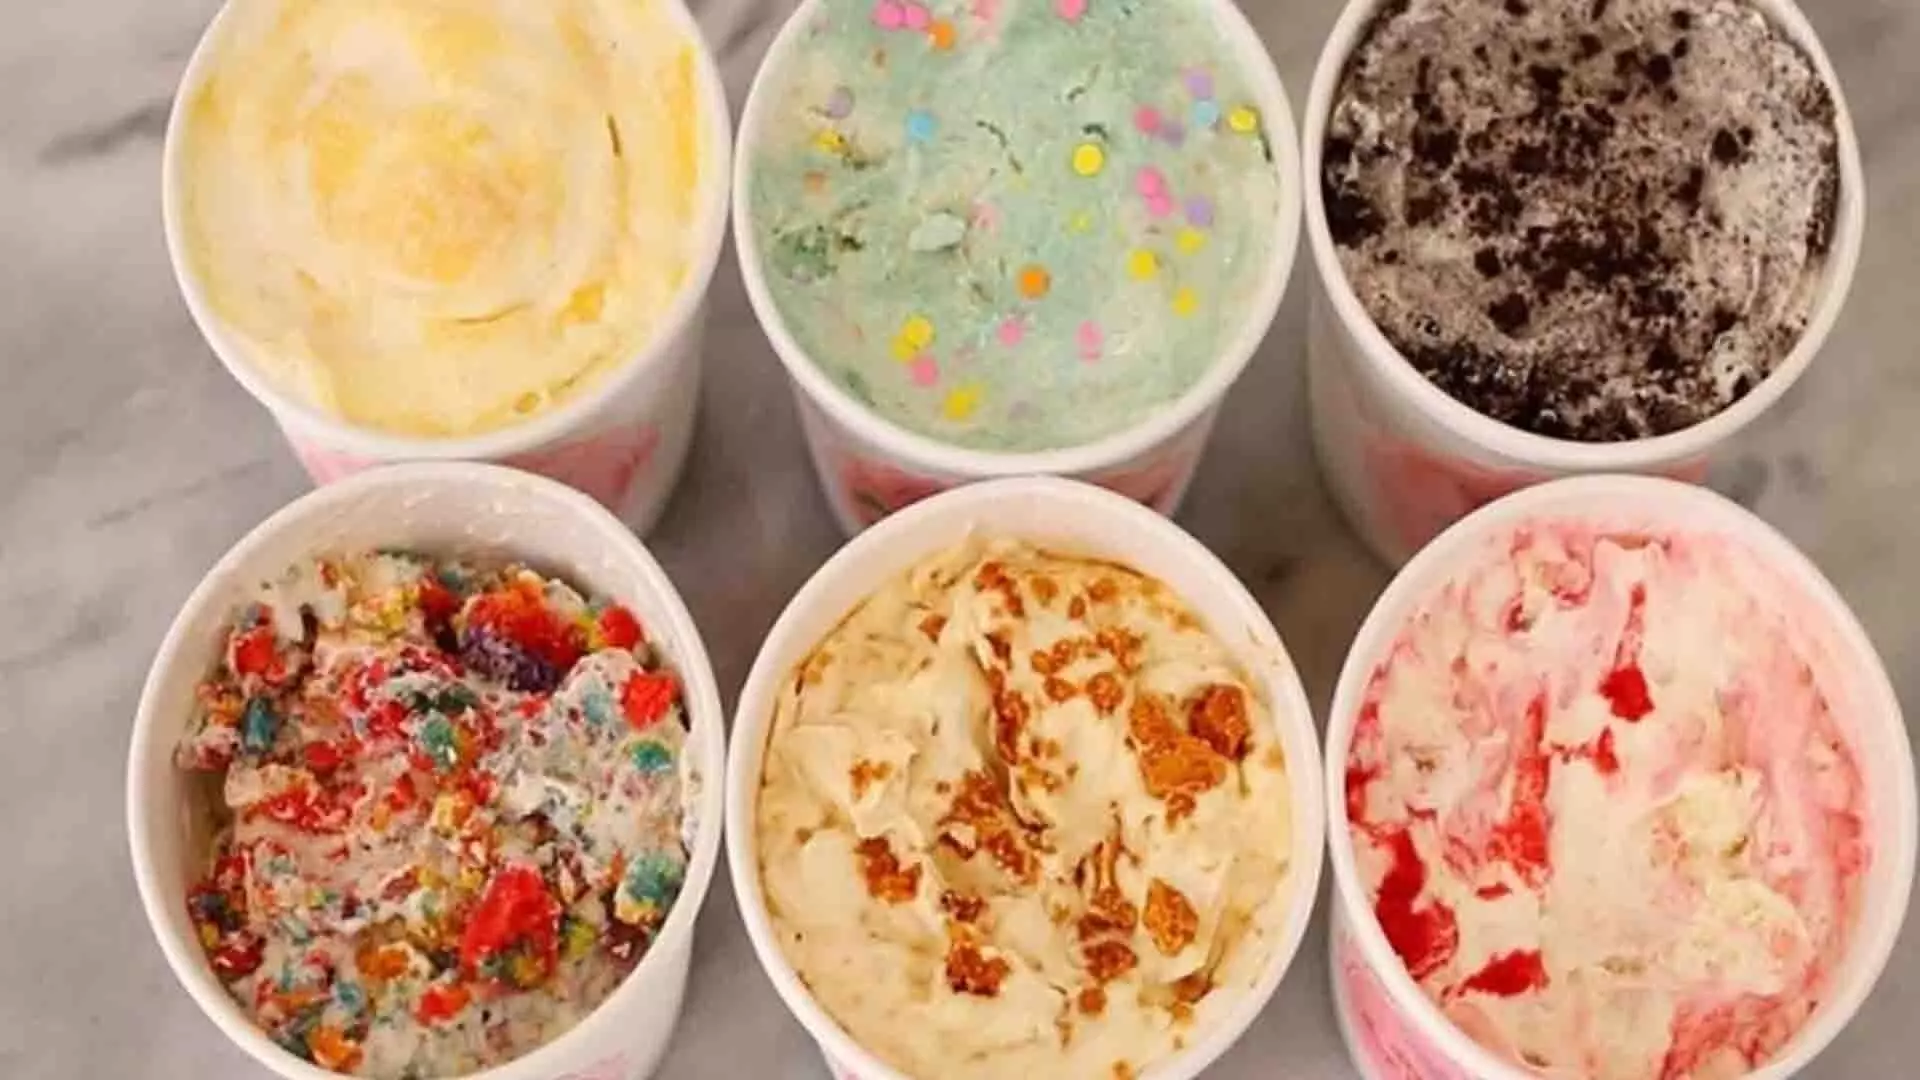 इस तरह बनाए घर पर ही आइसक्रीम, बचेंगे बाजार में होने वाली मिलावट से